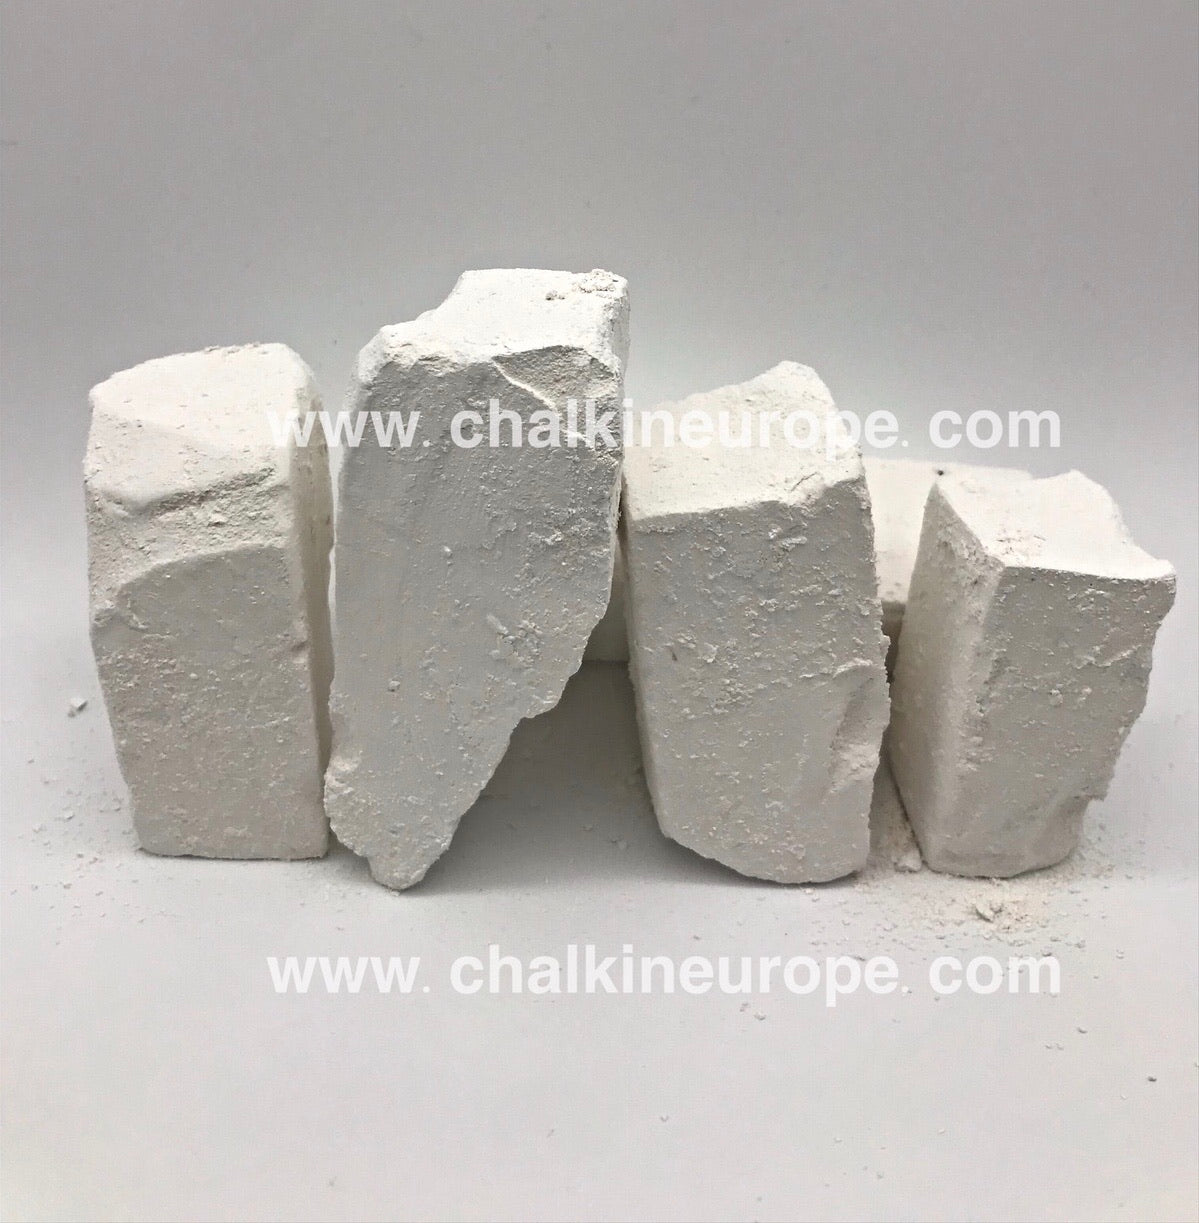 Edible chalk - Chalkineurope